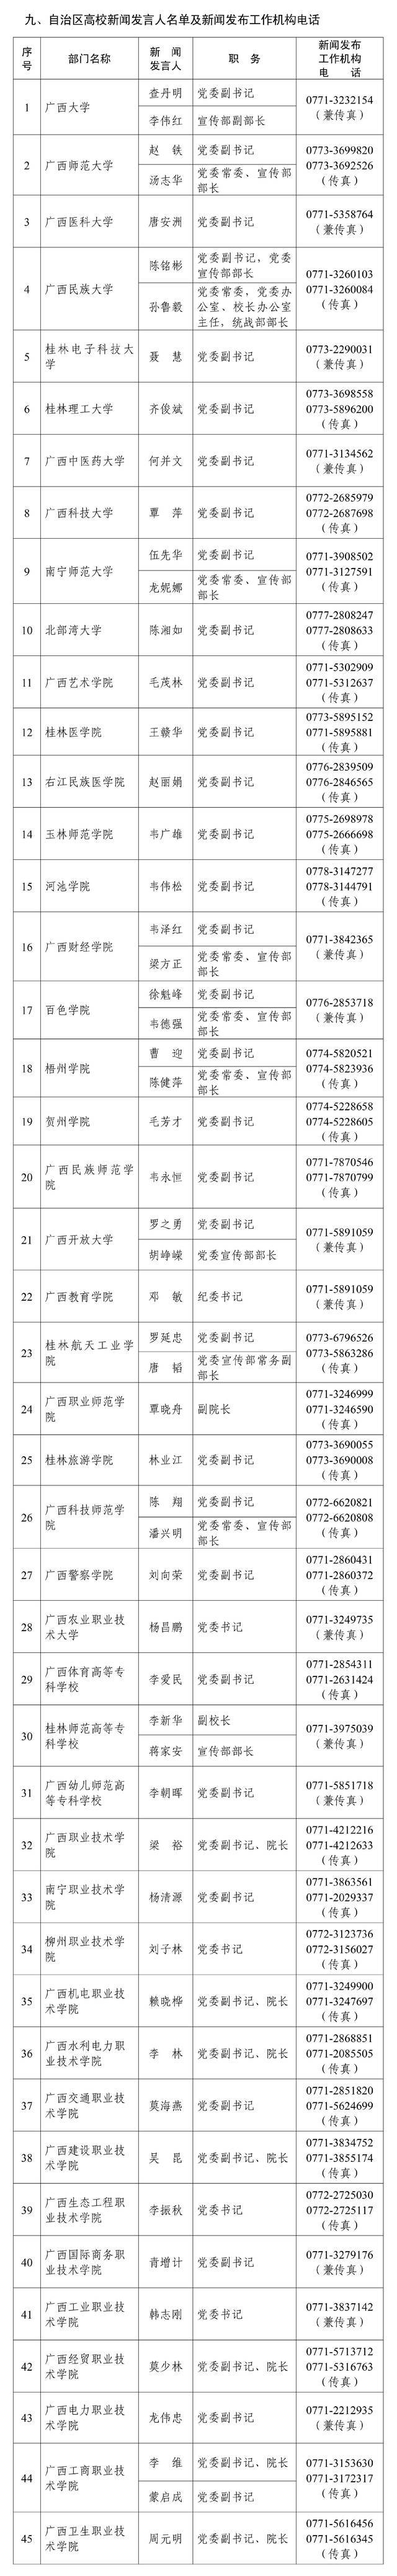 广西壮族自治区2022年度新闻发言人名录